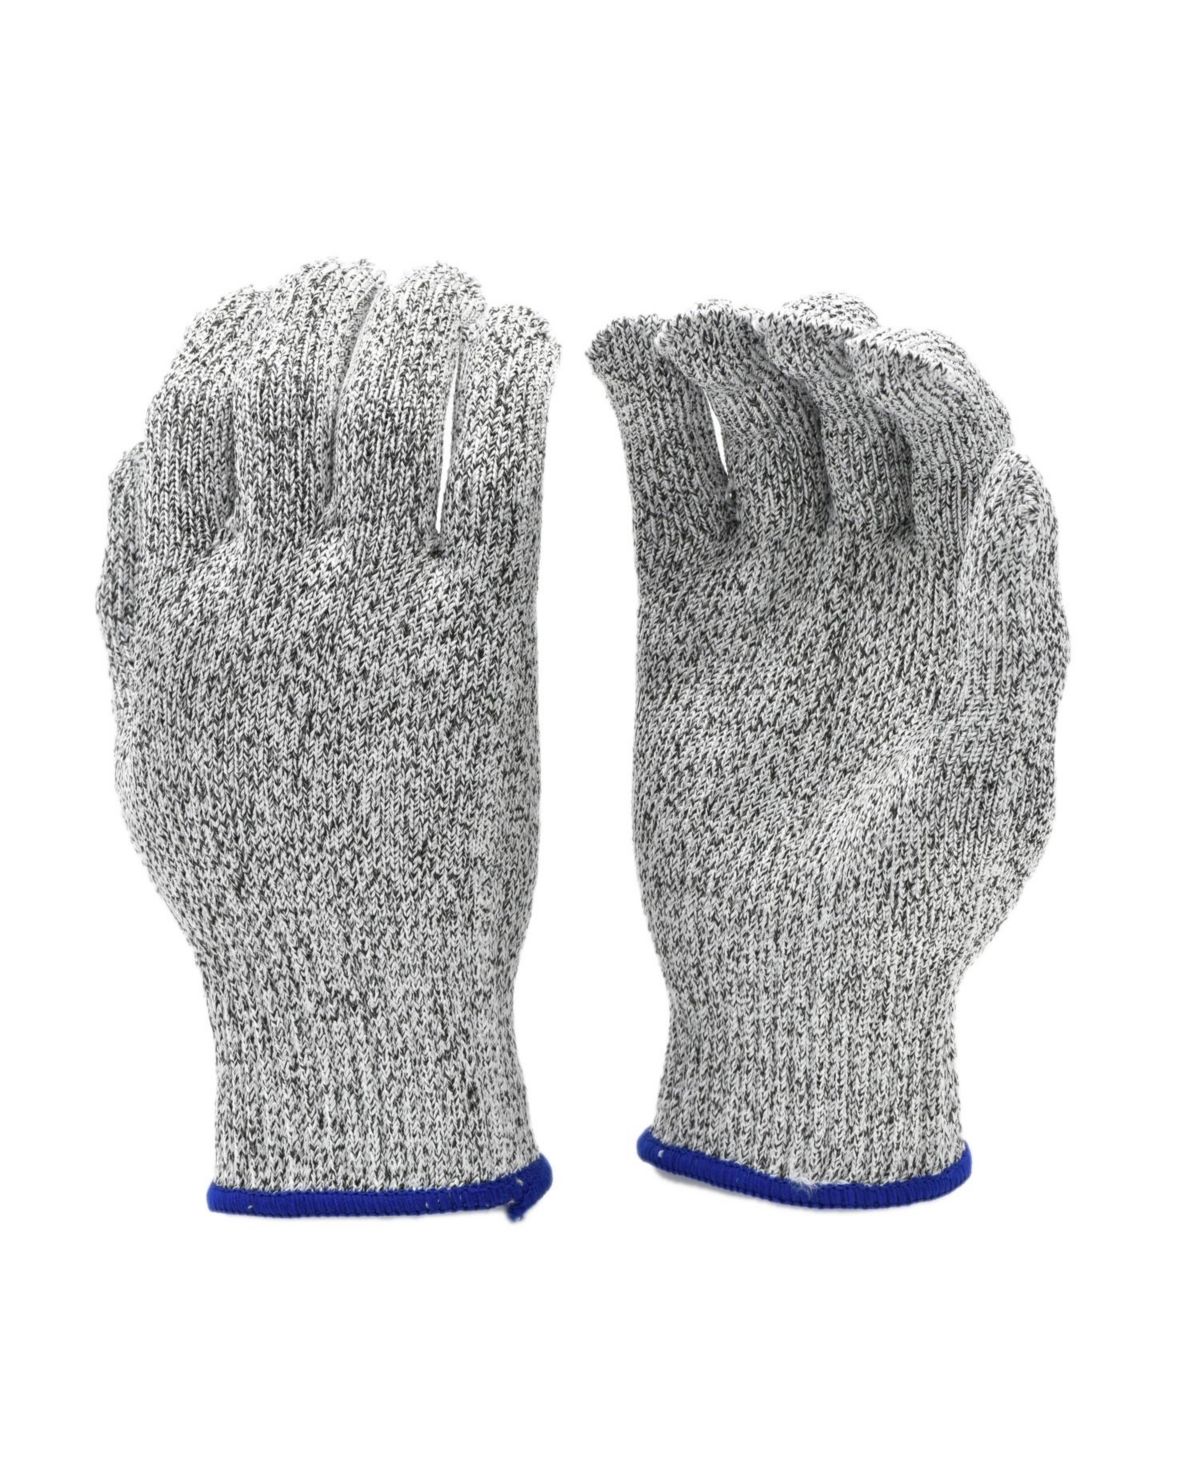 Cut Resistant Kitchen Gloves - Grey